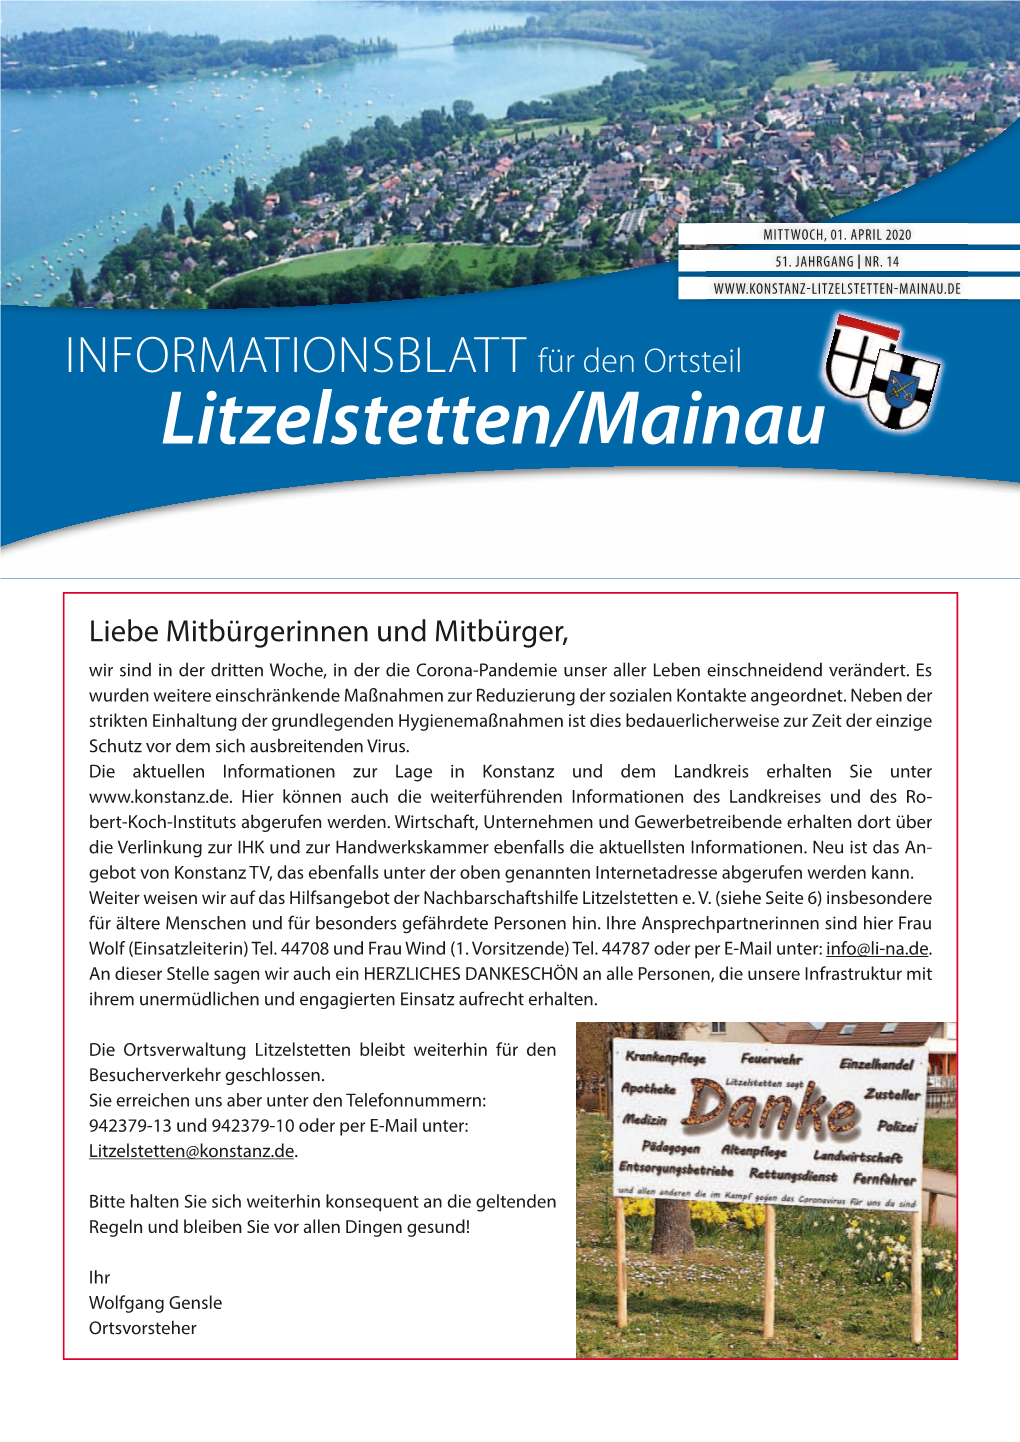 Litzelstetten/Mainau